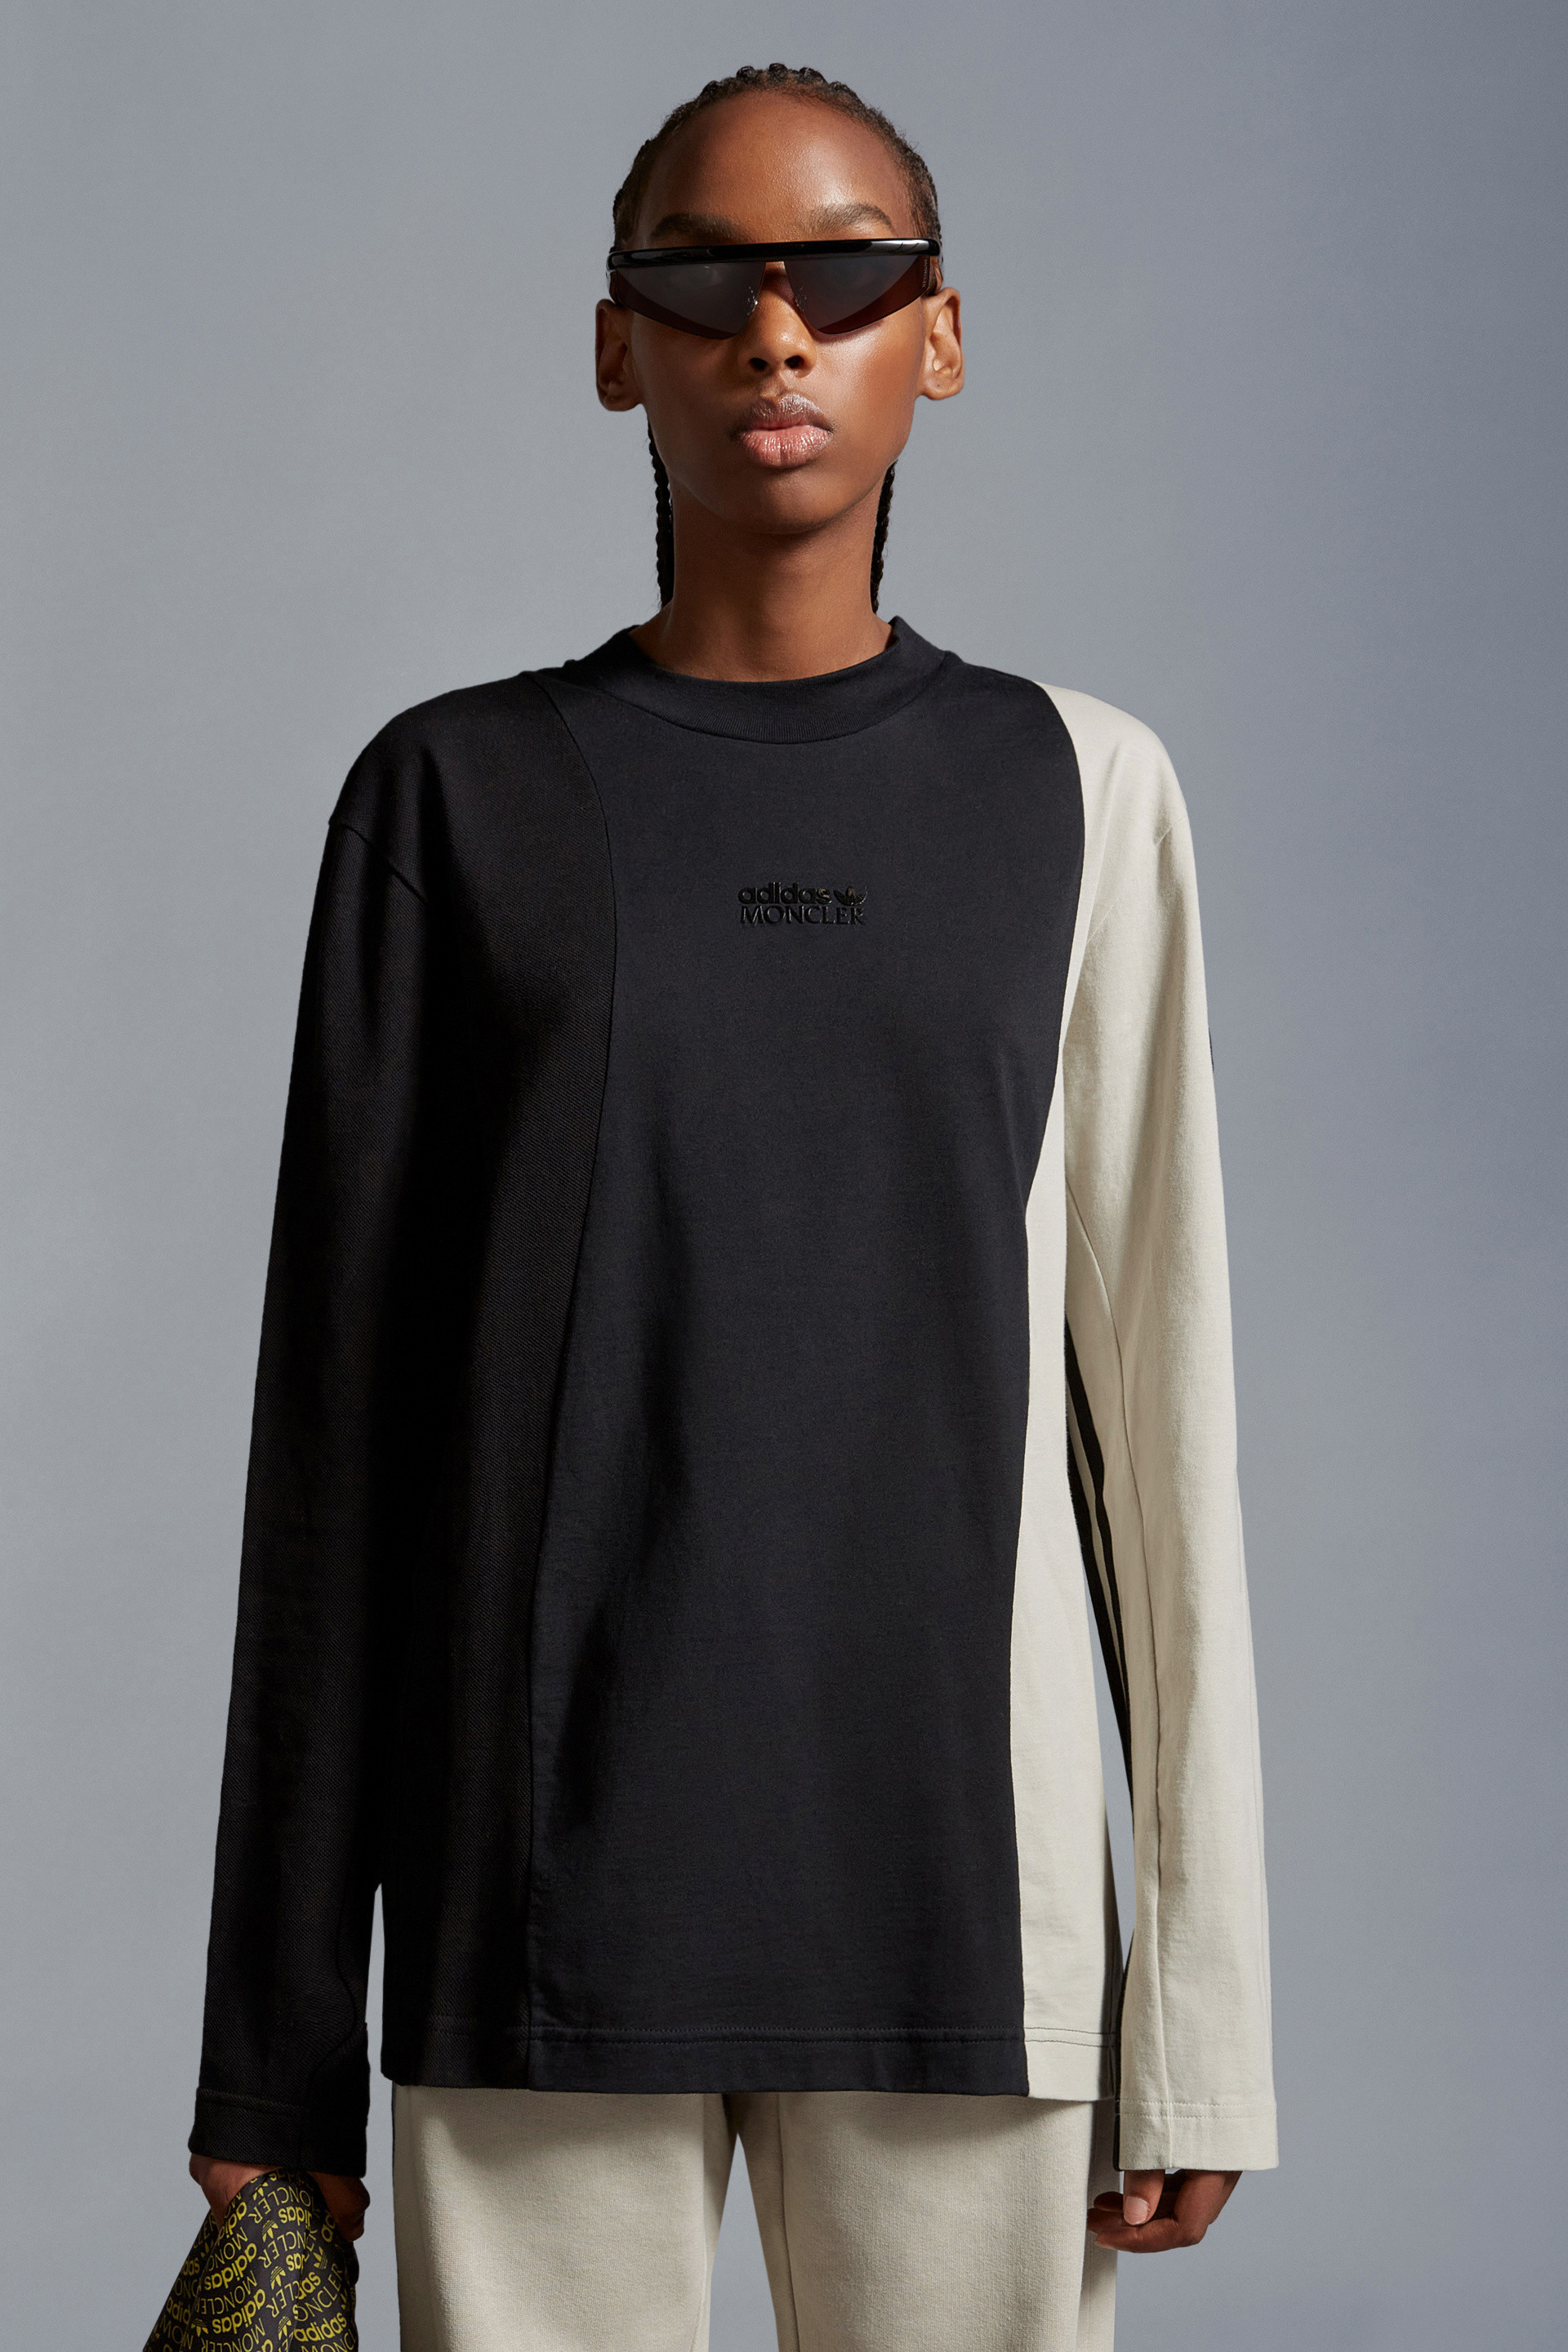 ブラック & ホワイト ロングスリーブTシャツ : Moncler x adidas